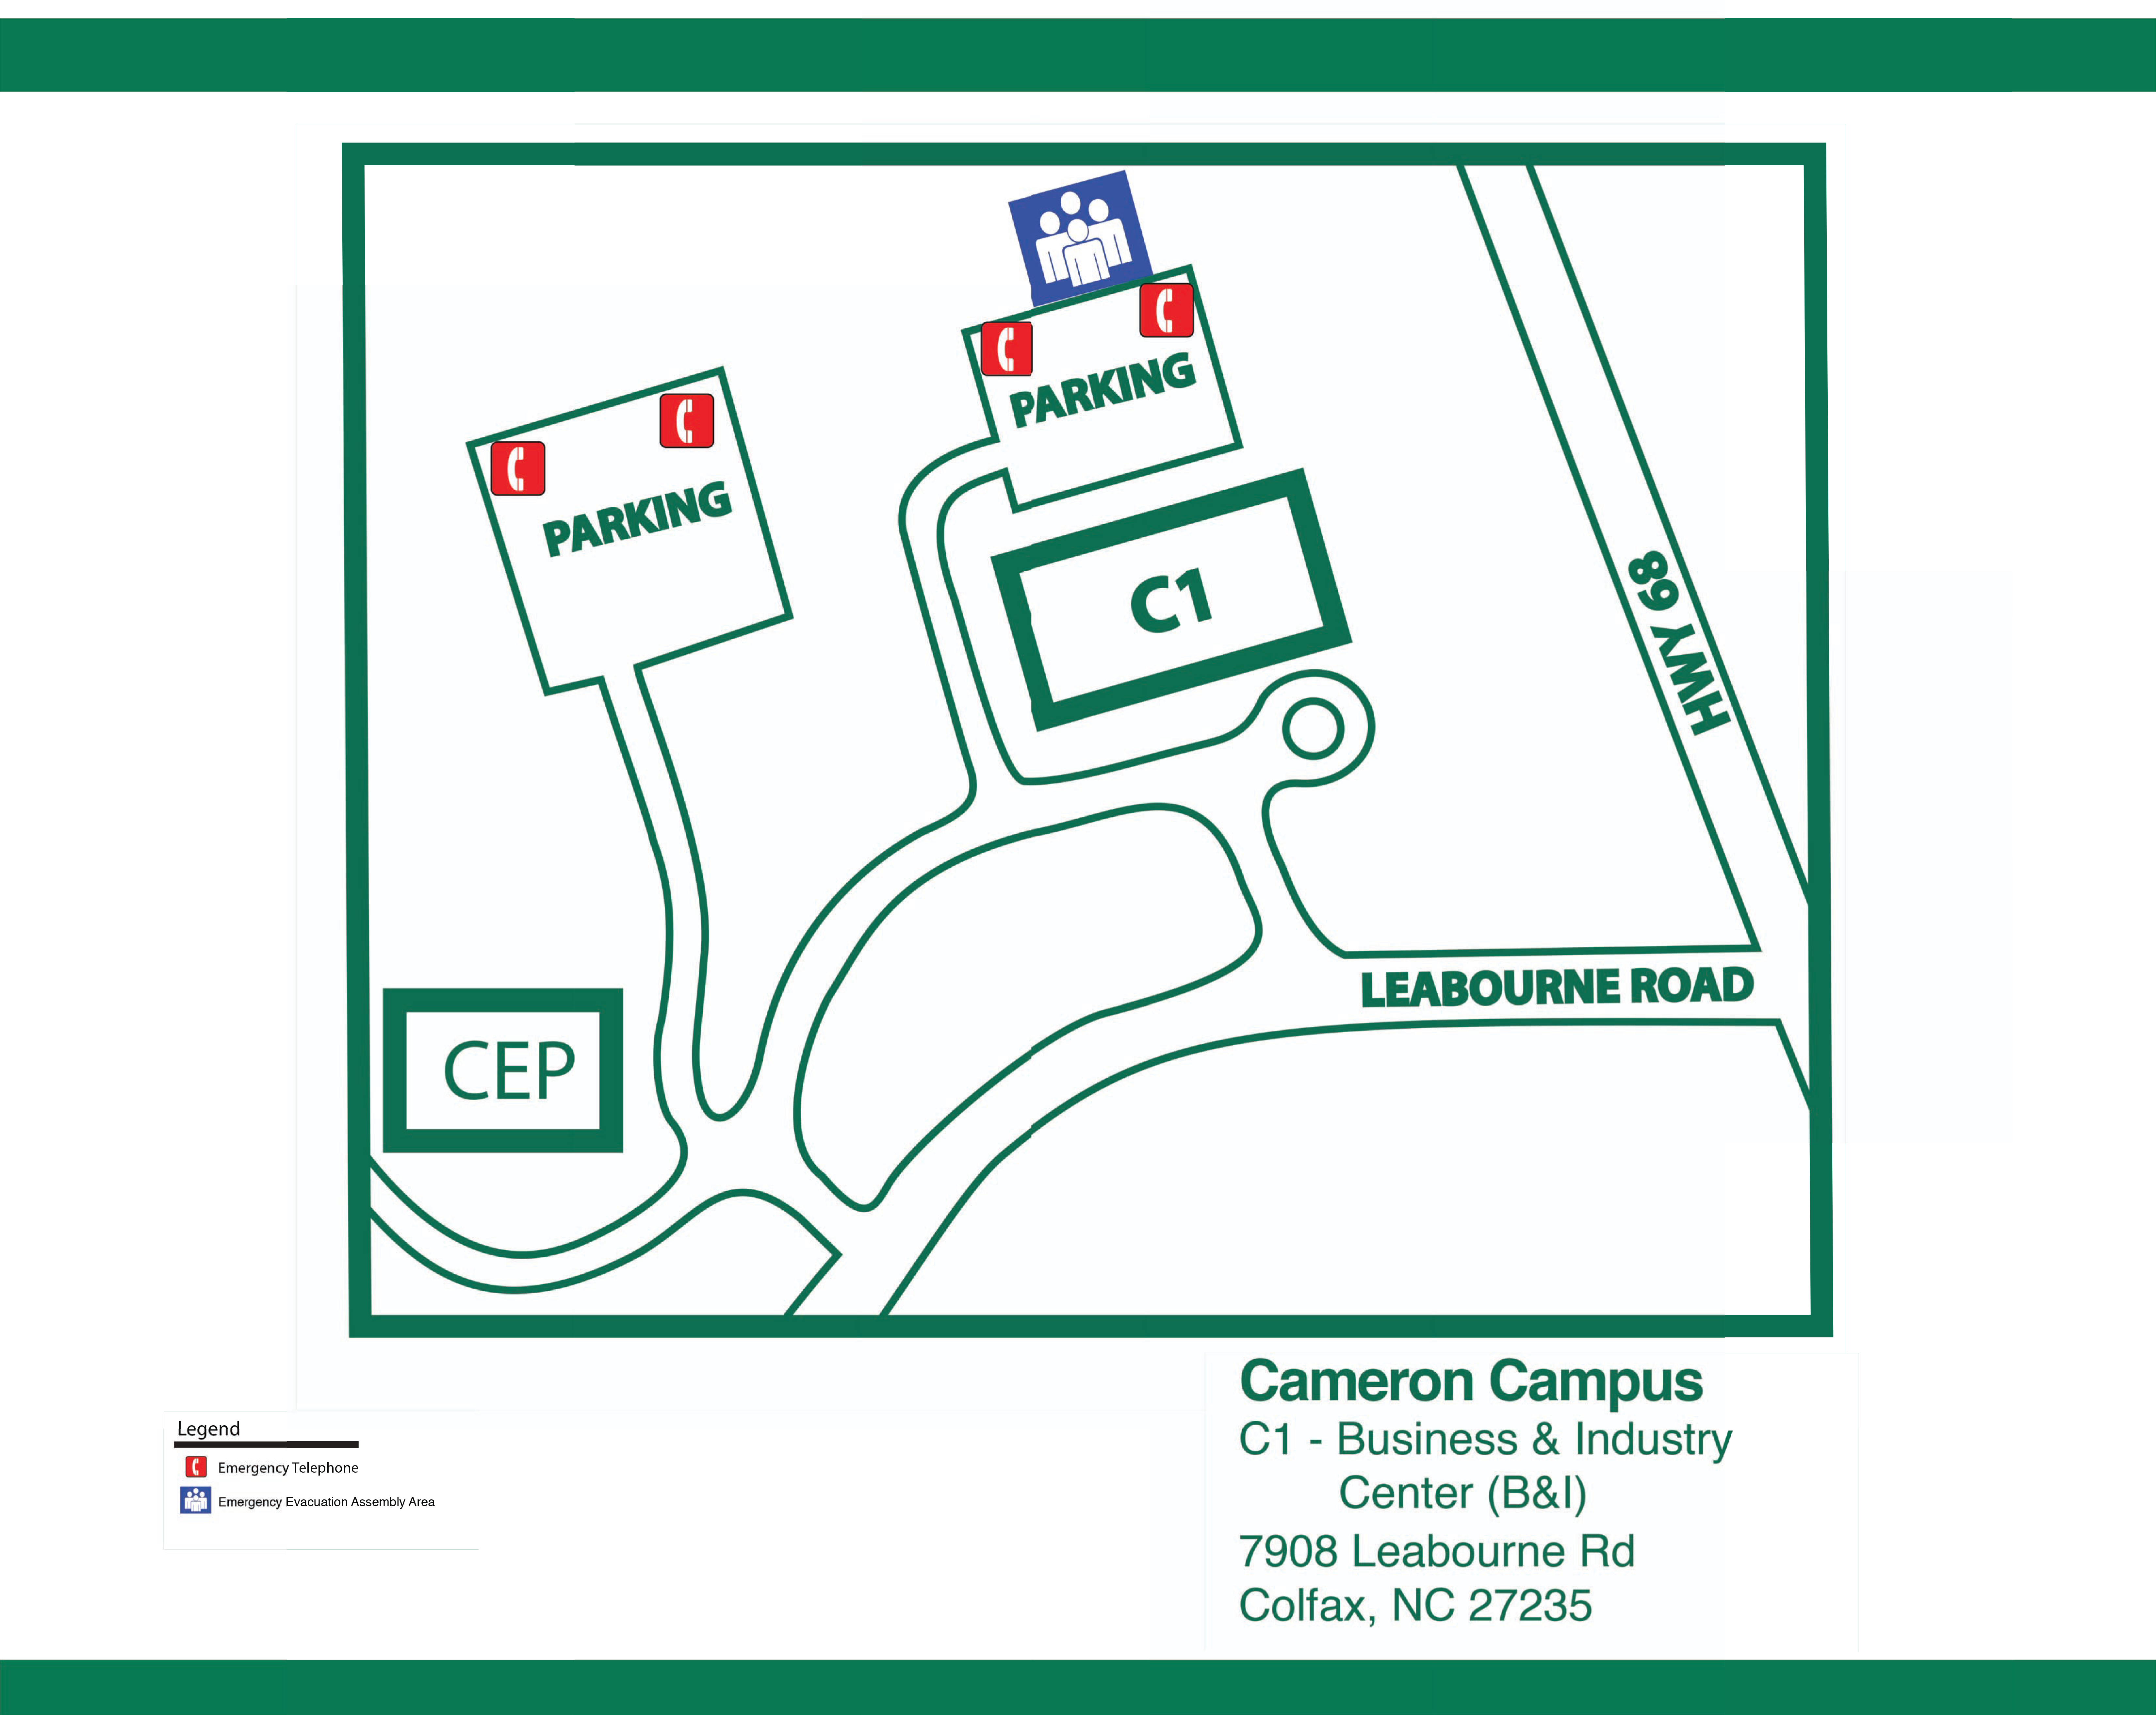 Cameron Campus Parking